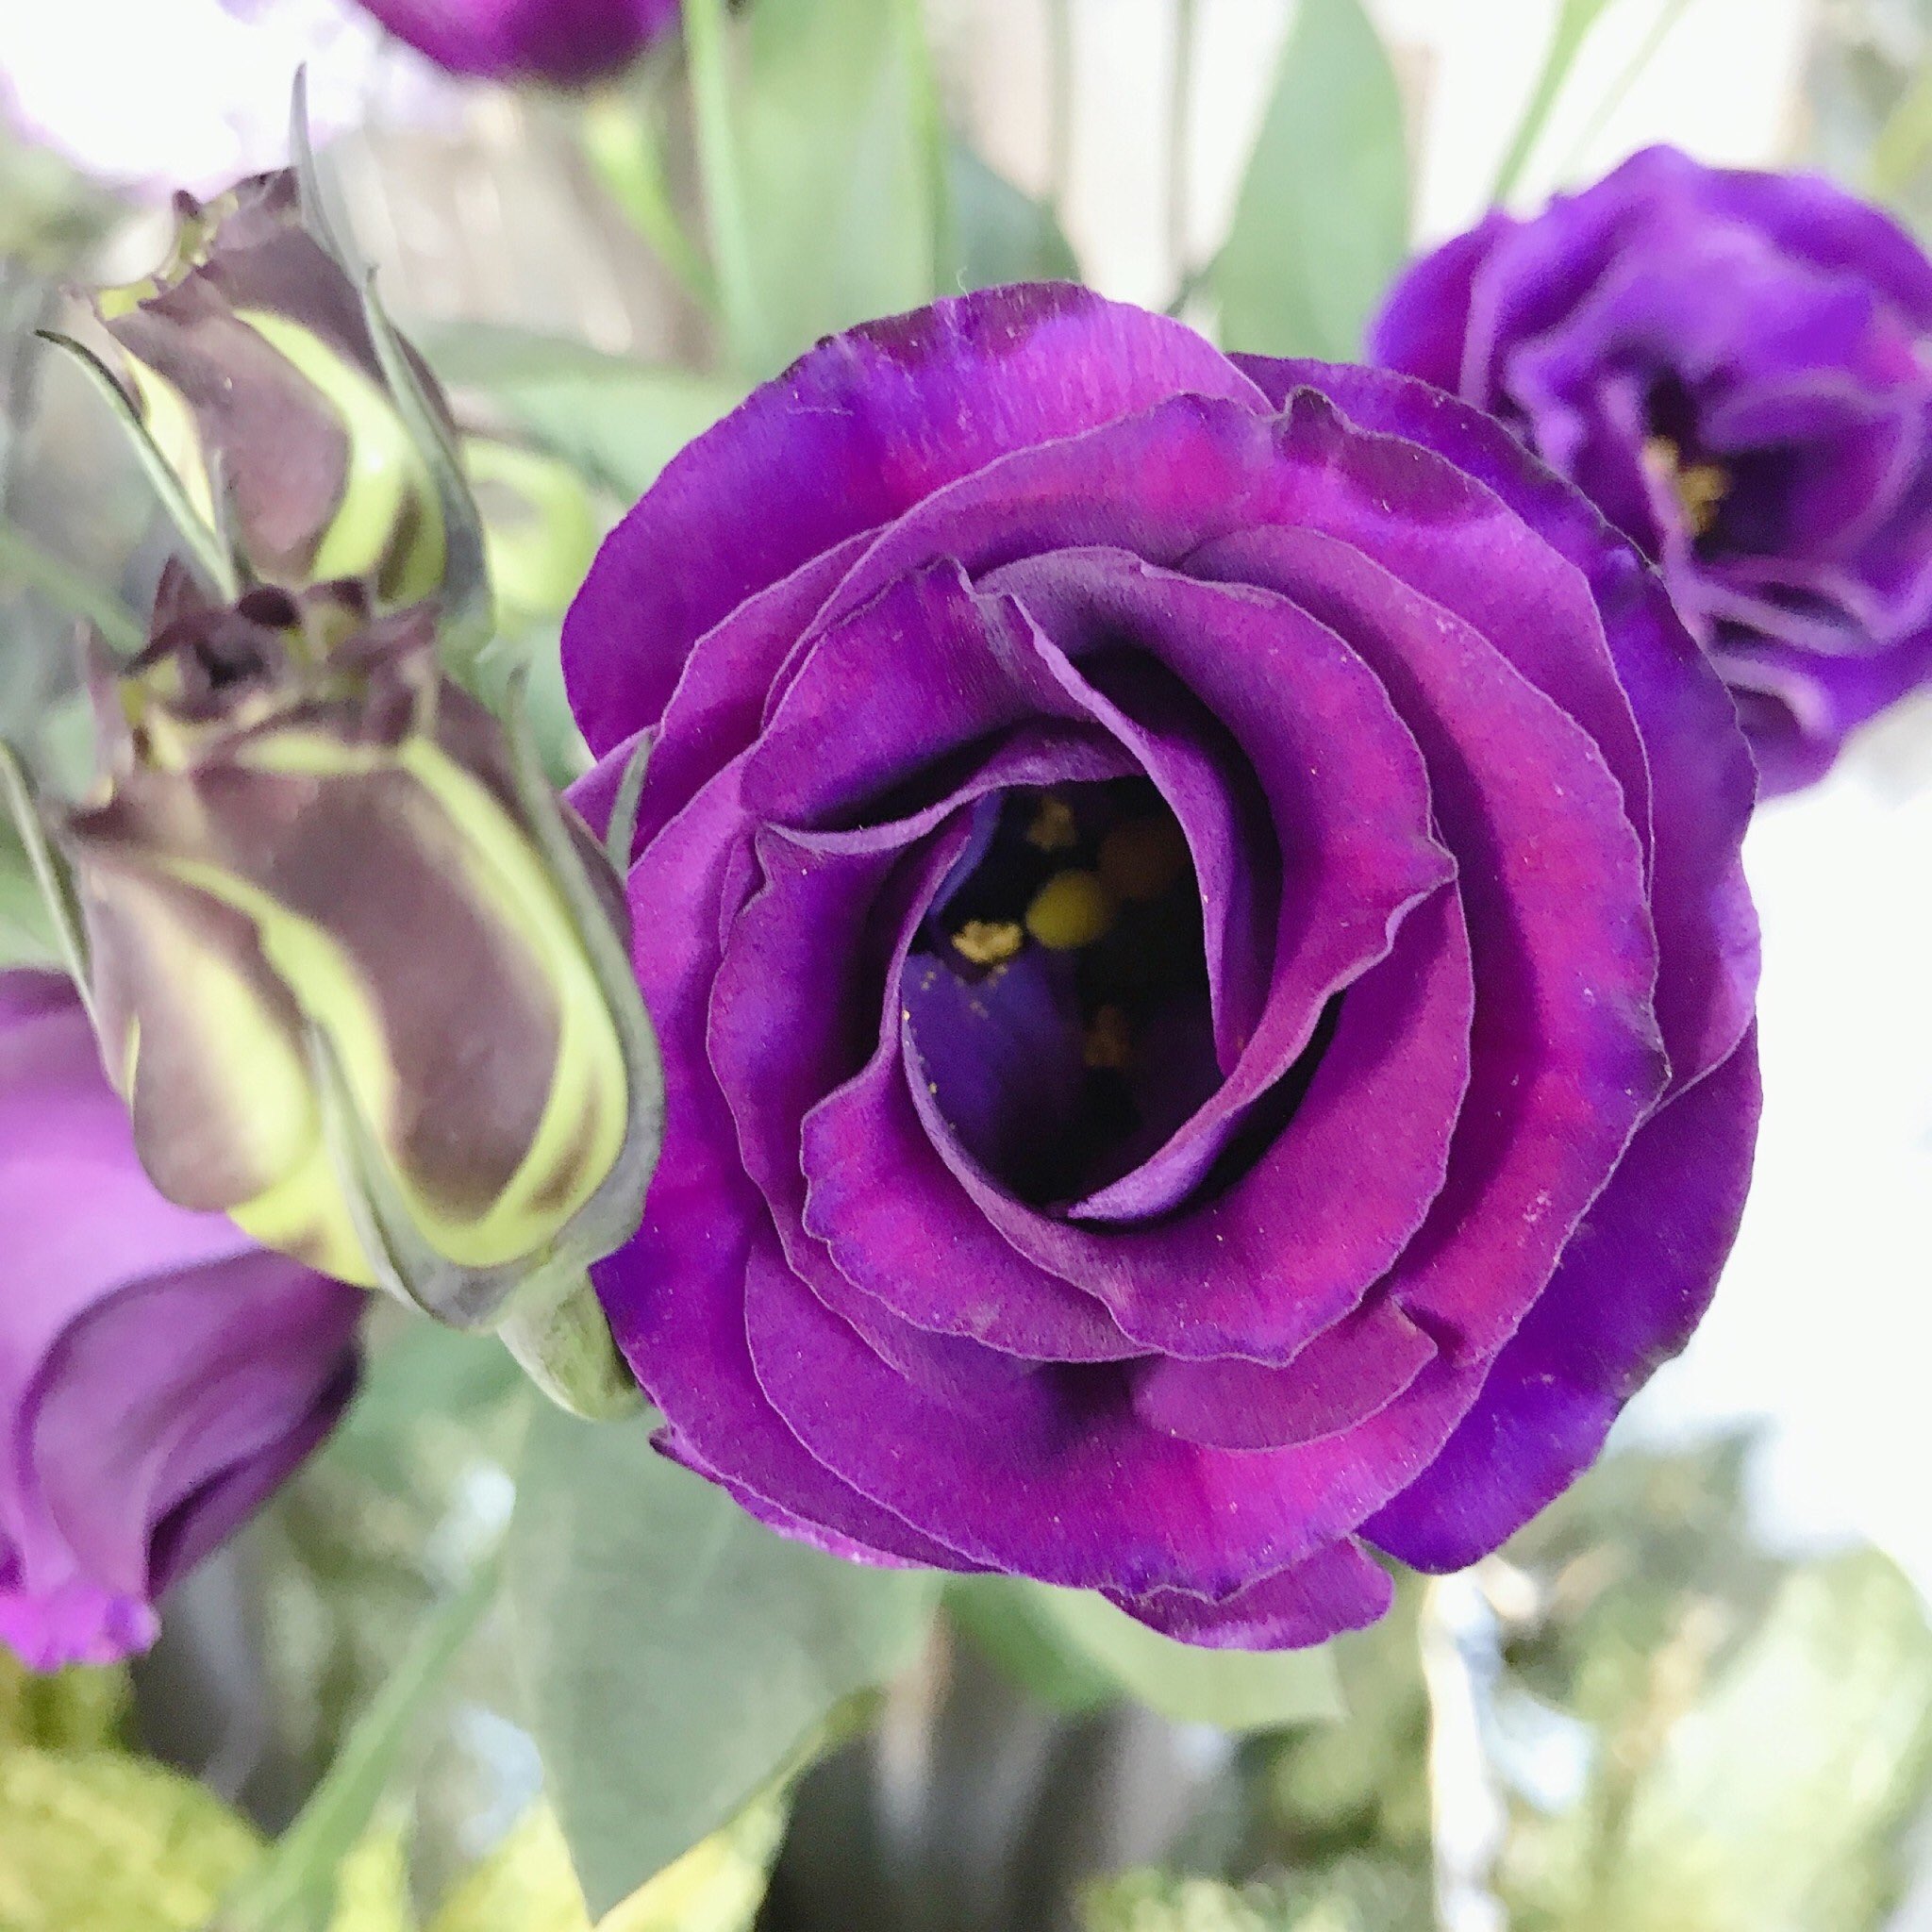 長光花園 こんばんは トルコキキョウの マンハッタン というお花です 誕生花 7 12 7 等 花言葉 優雅 すがすがしい美しさ 等 紫は 希望 という花言葉も あります トルコキキョウの原産地って知ってますか 文字数の関係で次回に